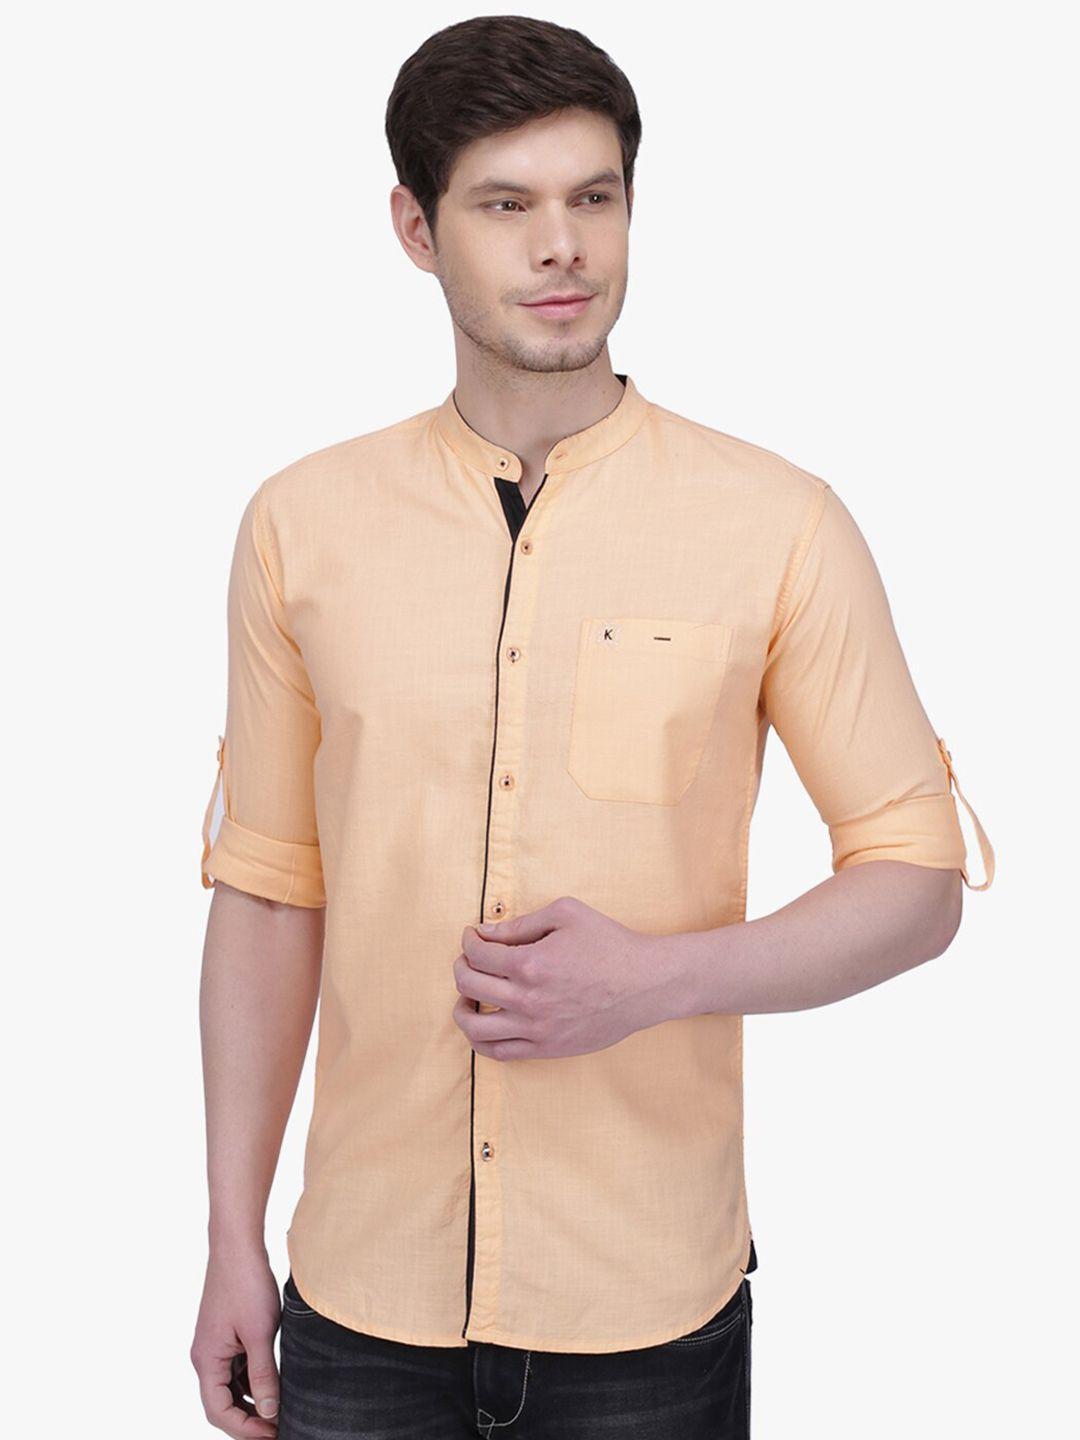 kuons avenue men smart slim fit linen casual shirt